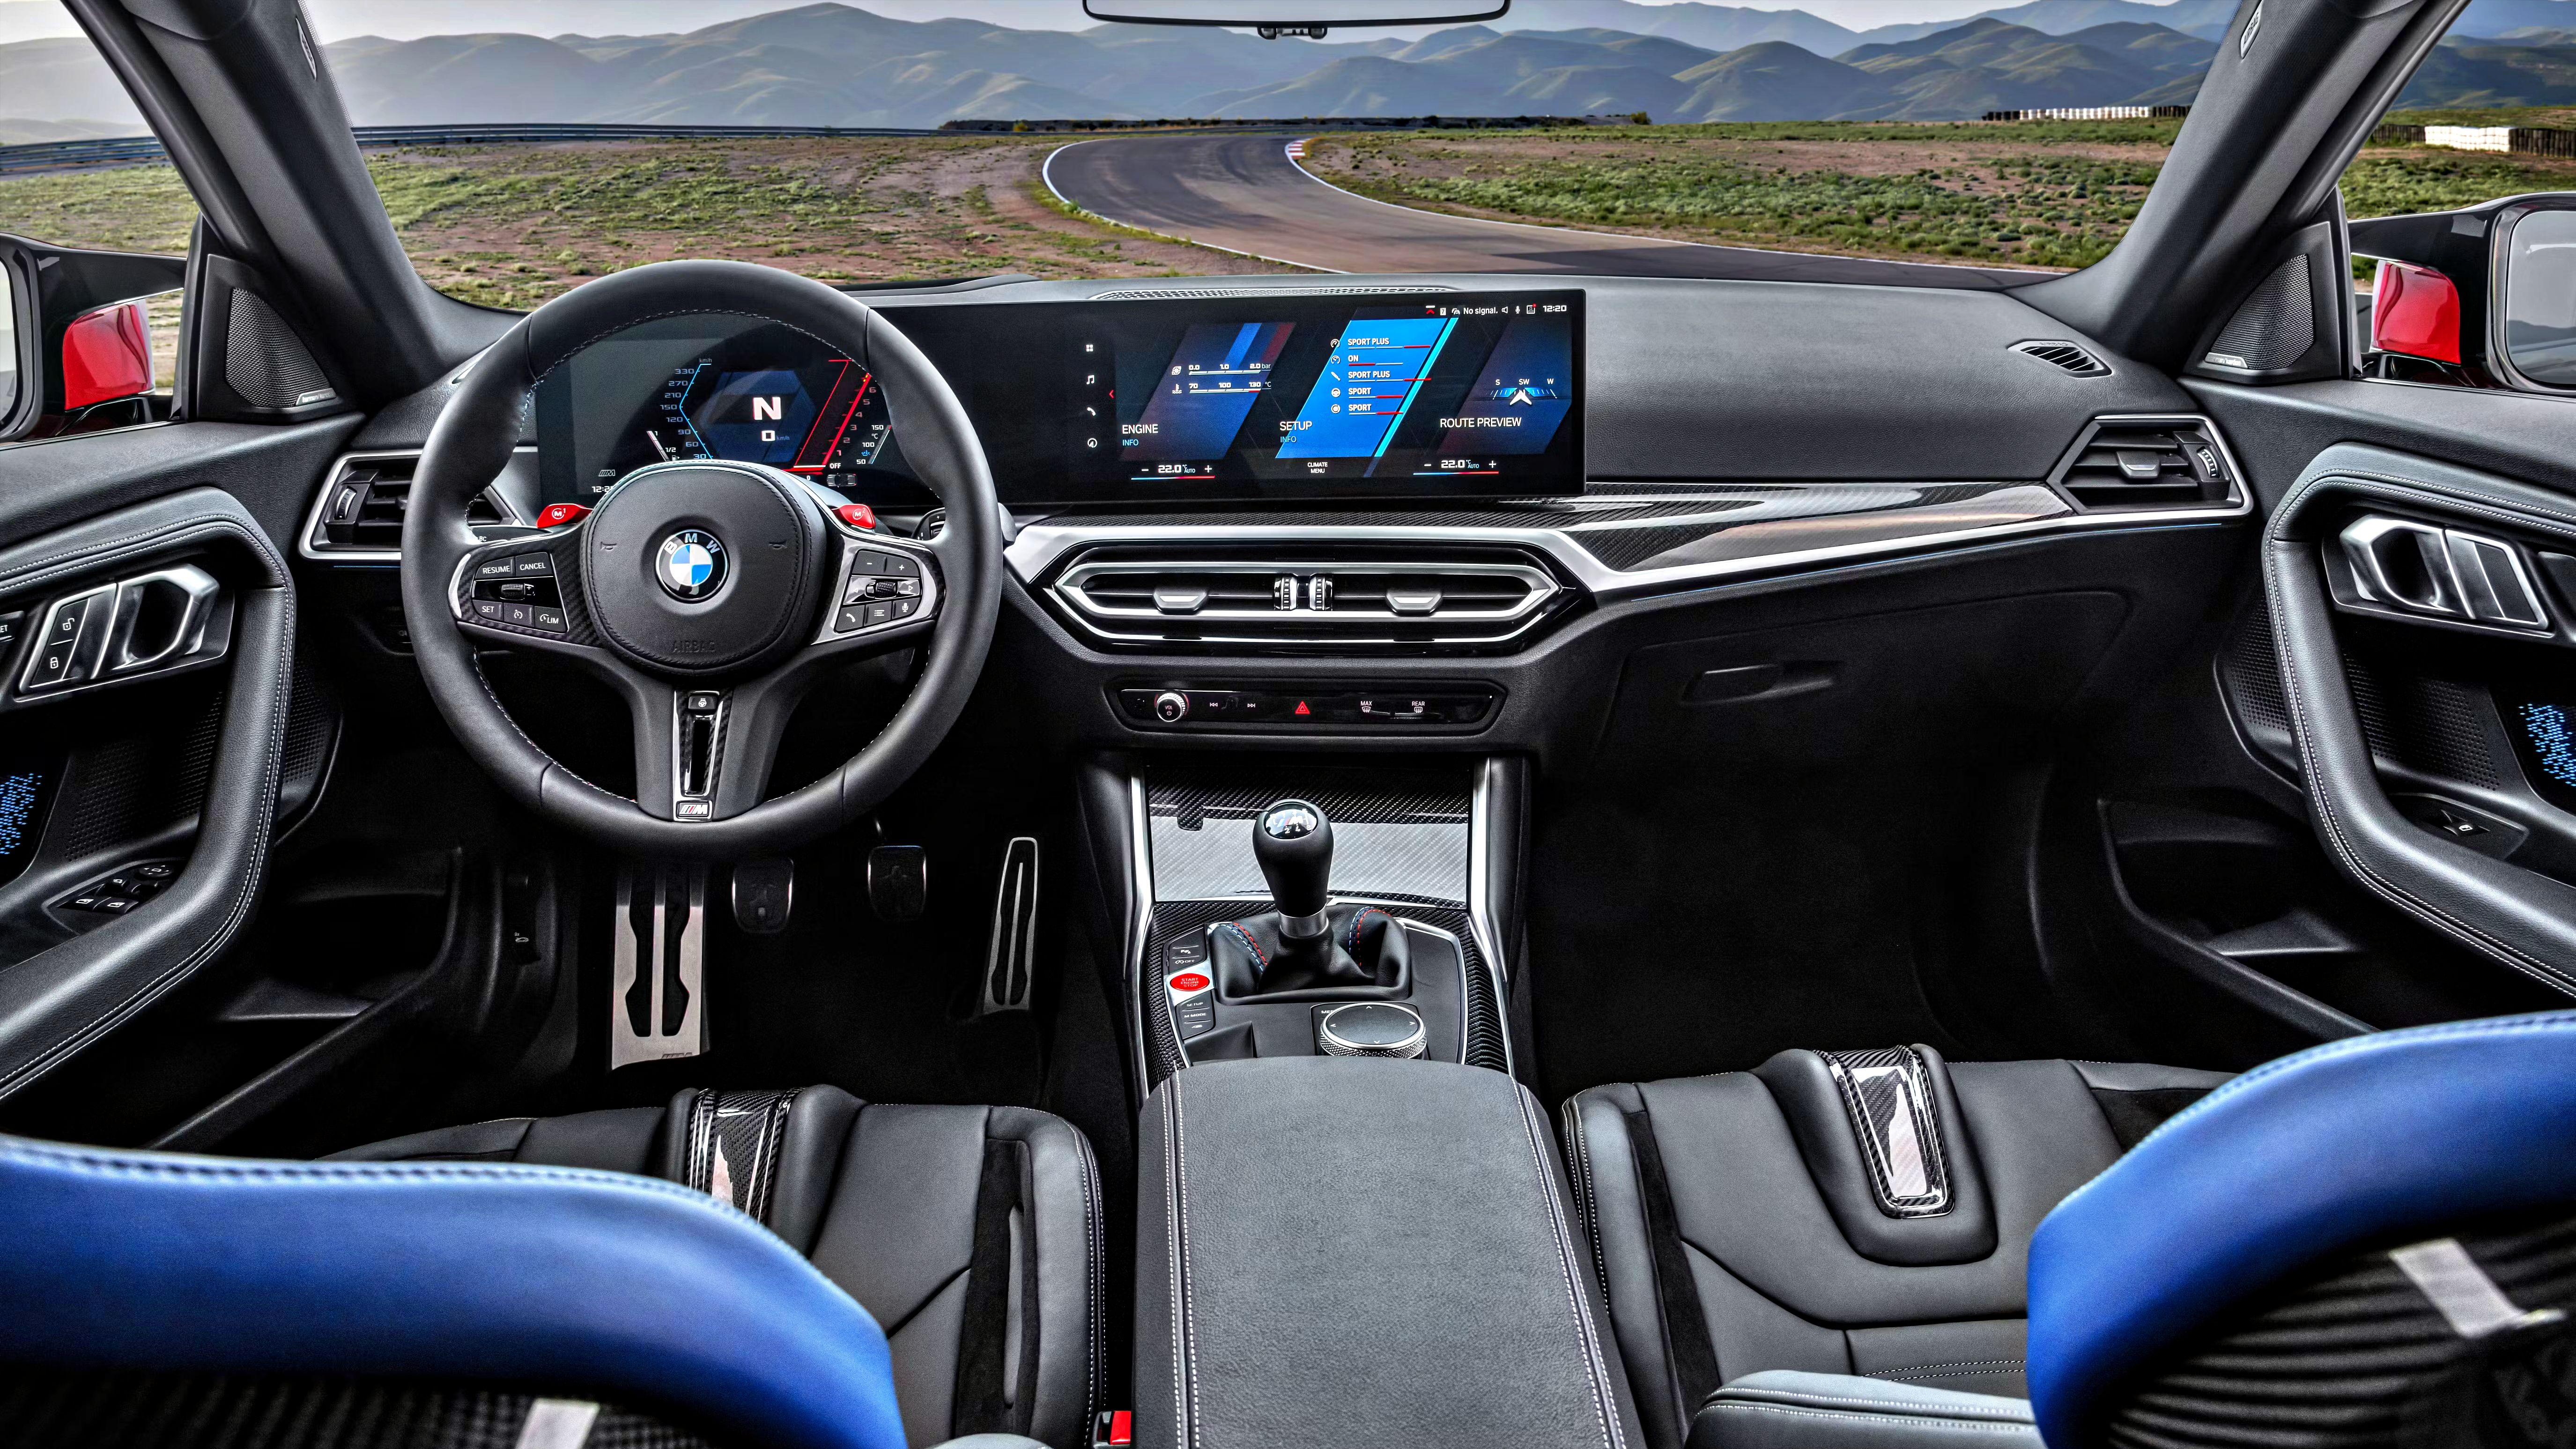 BMW M2 dashboard